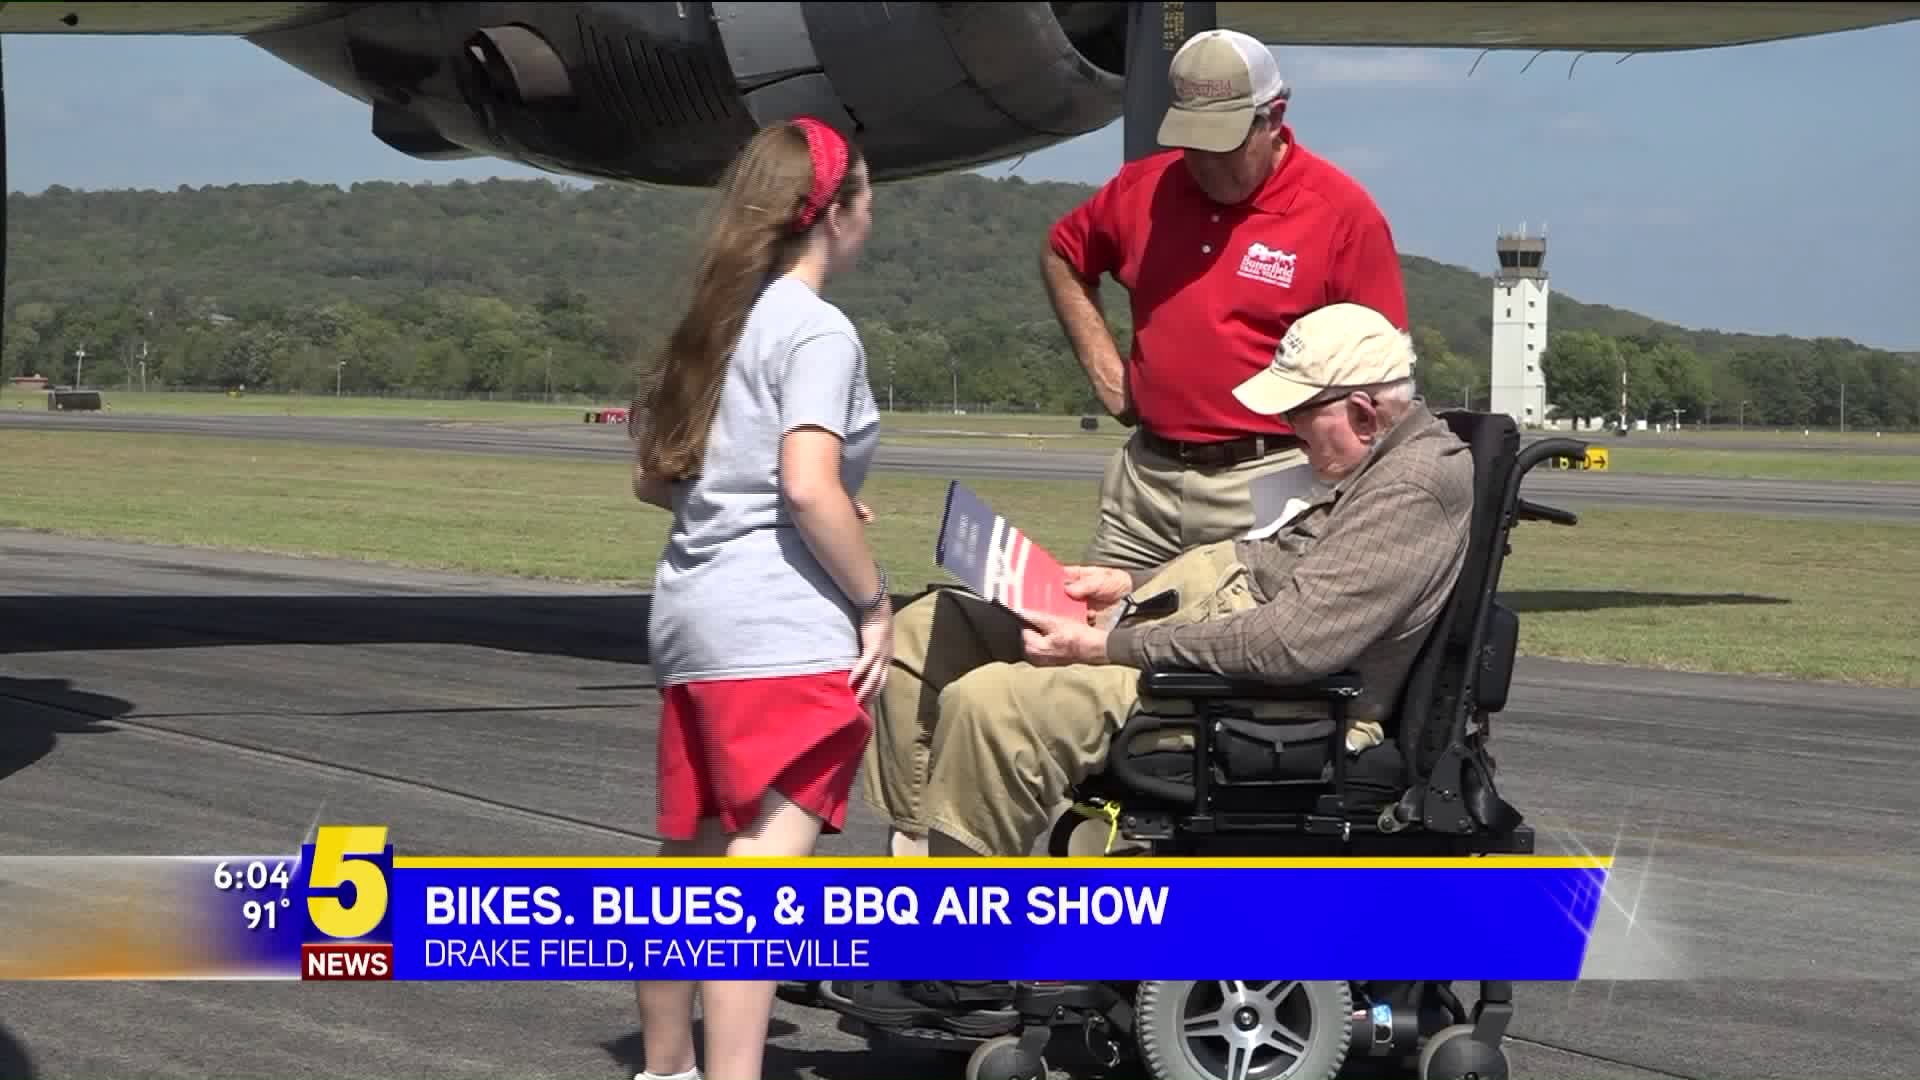 Bikes, Blues & BBQ Air Show